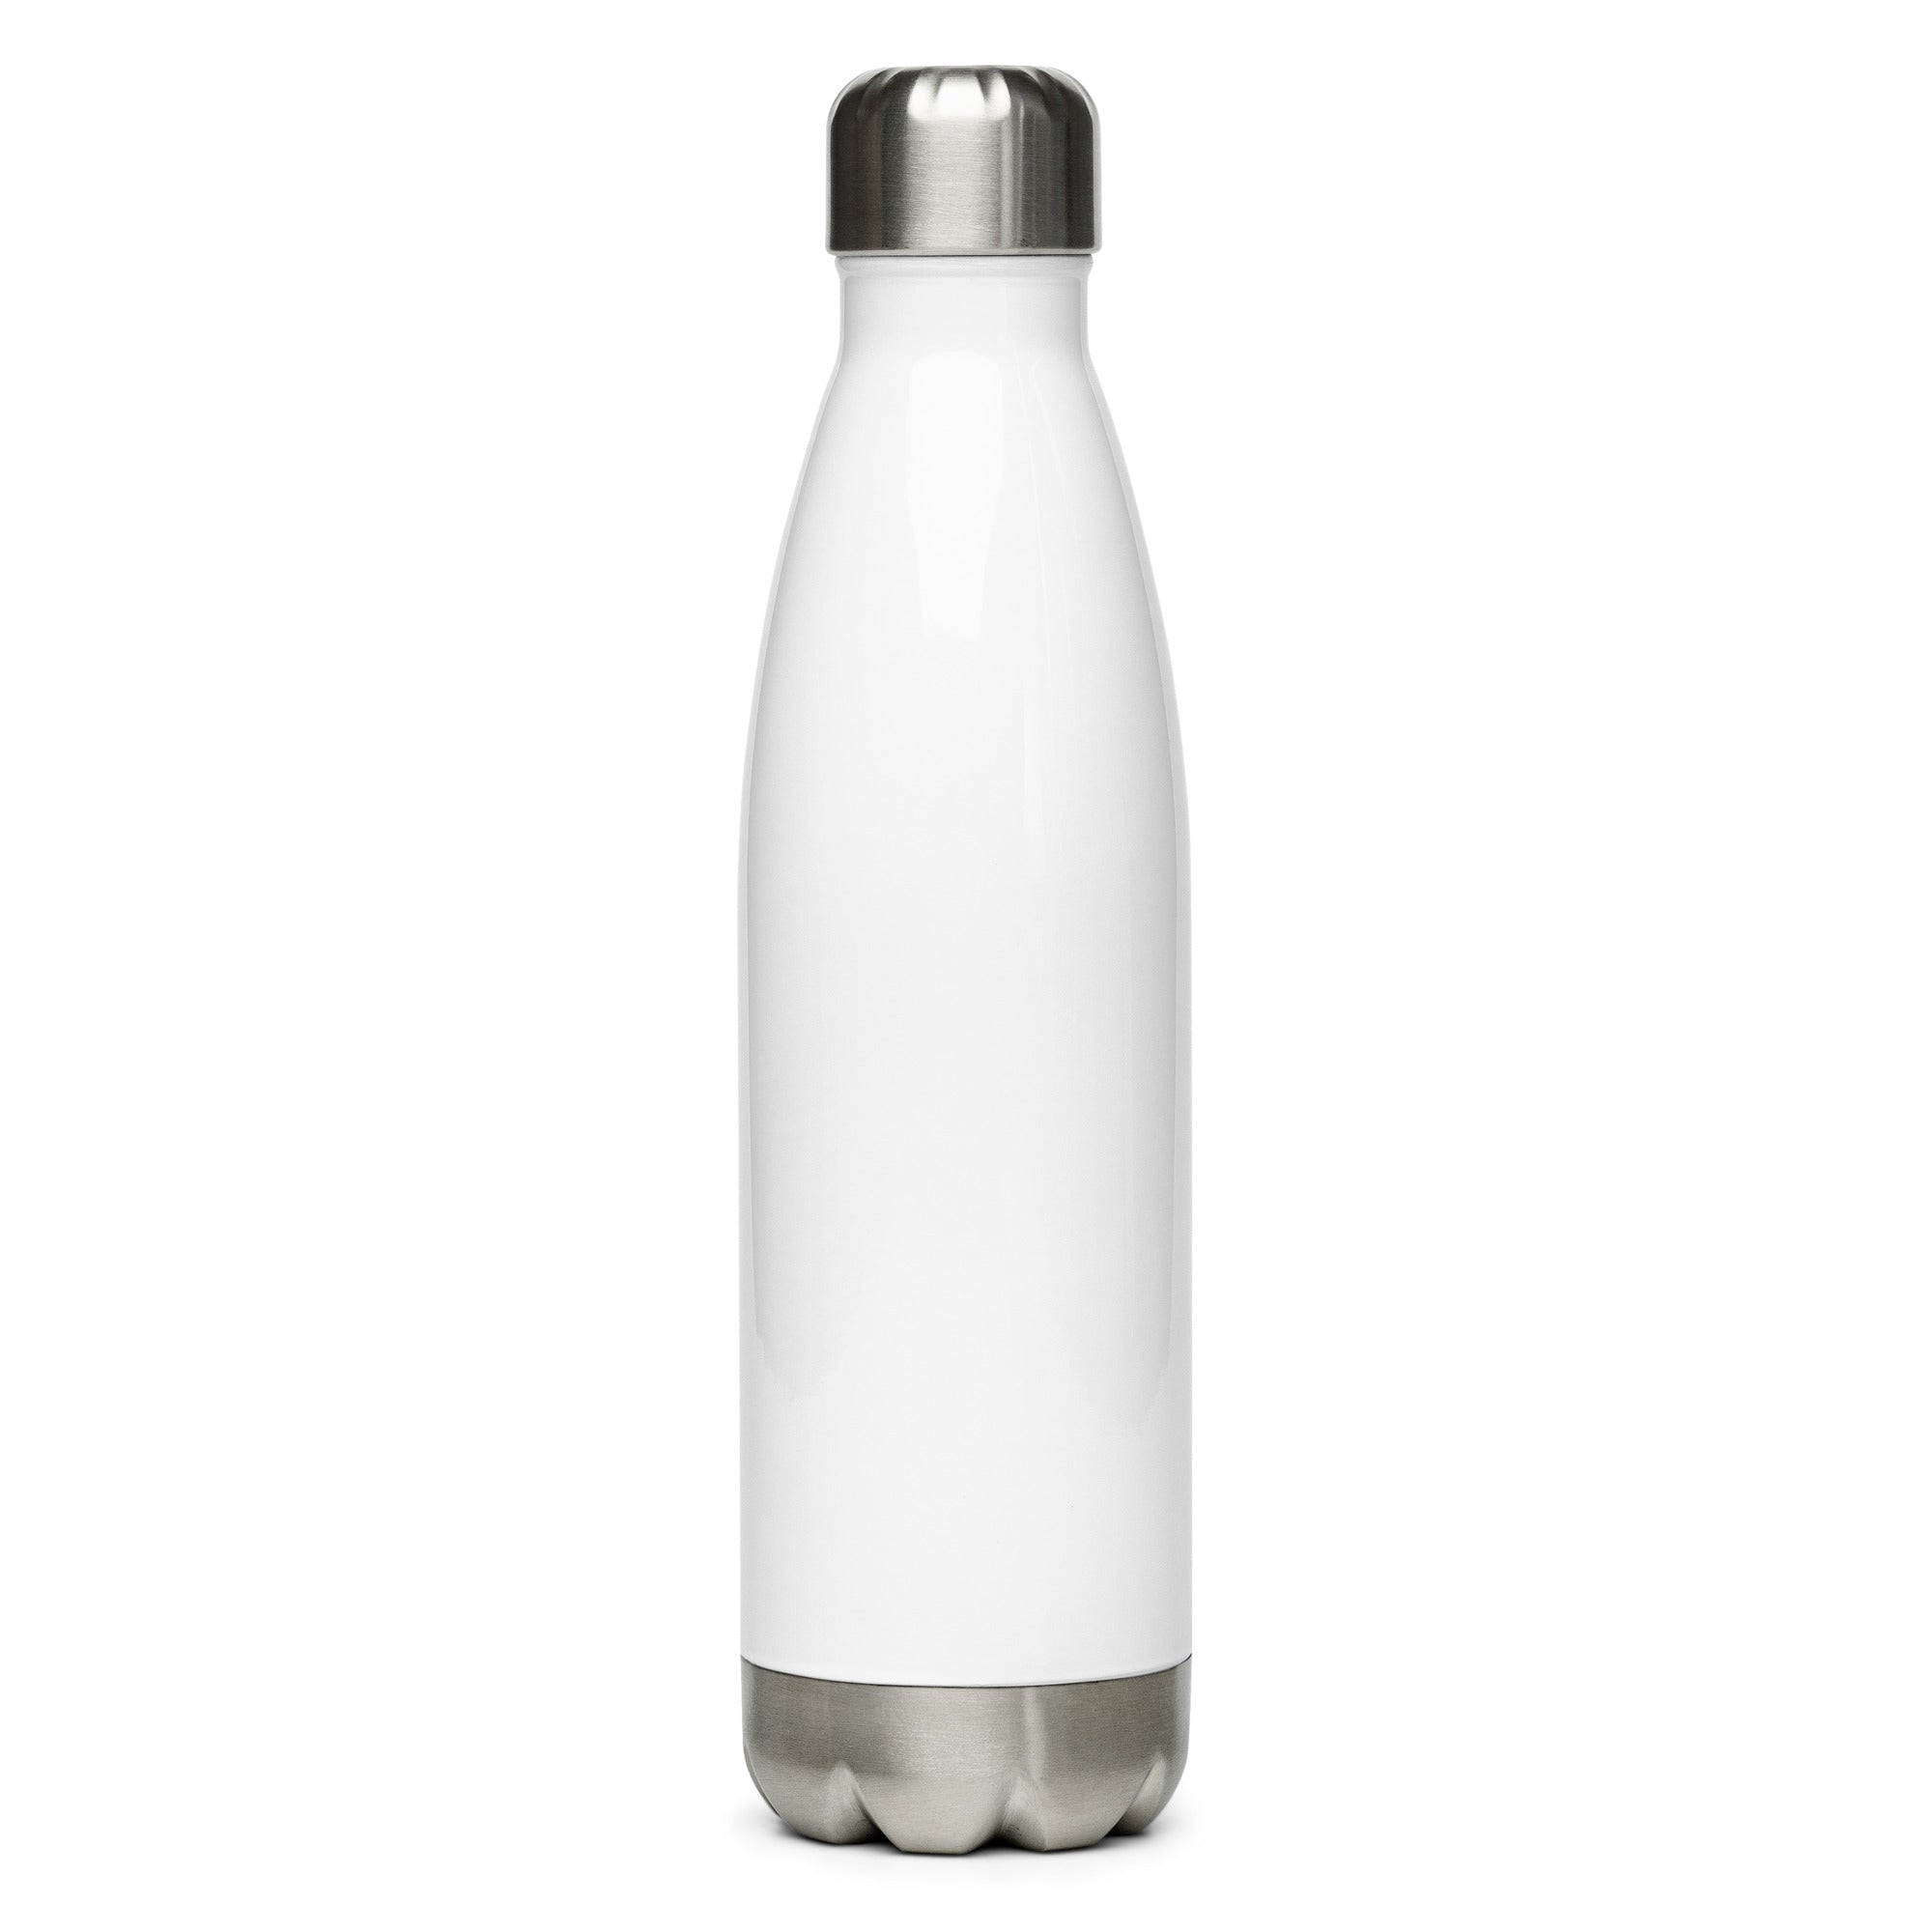 Stainless steel water bottle - Matthew 17:20